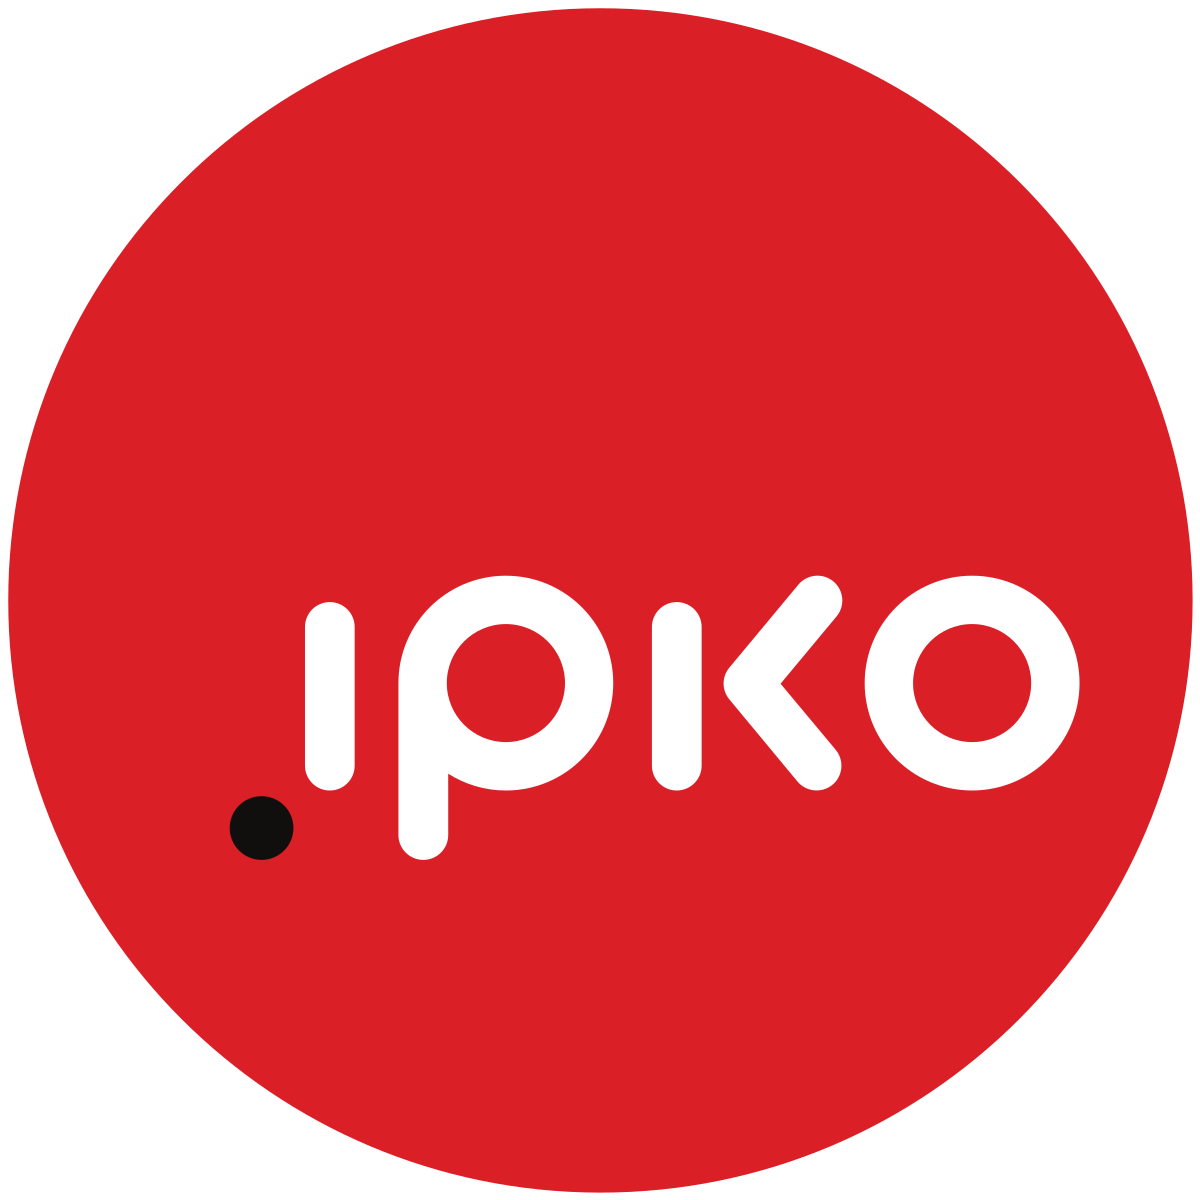 IPKO_logo.svg